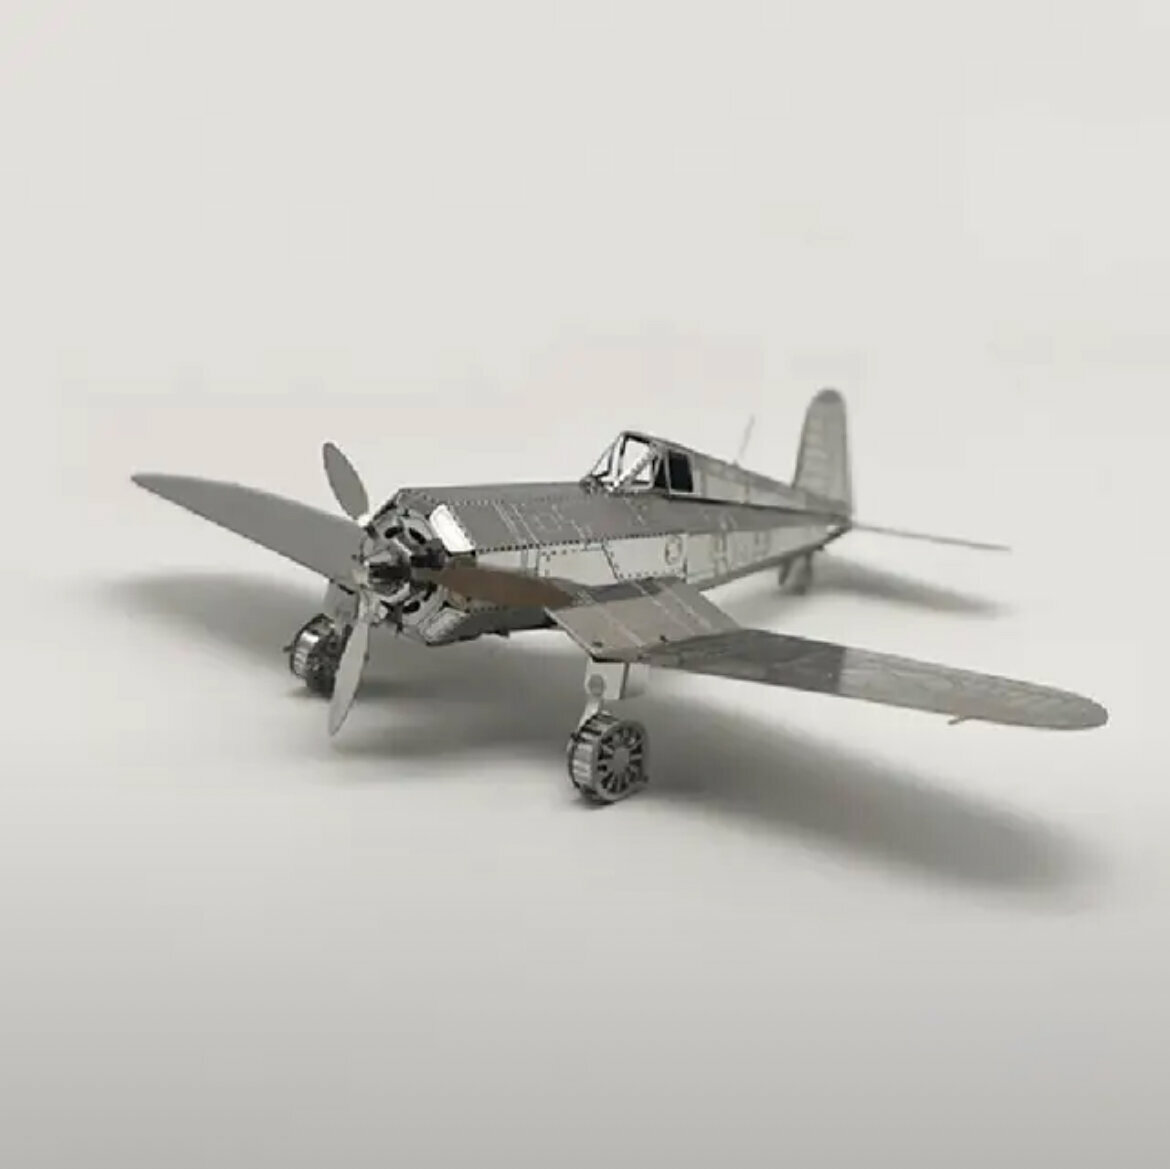 "Fighter" - сборная 3D модель самолета